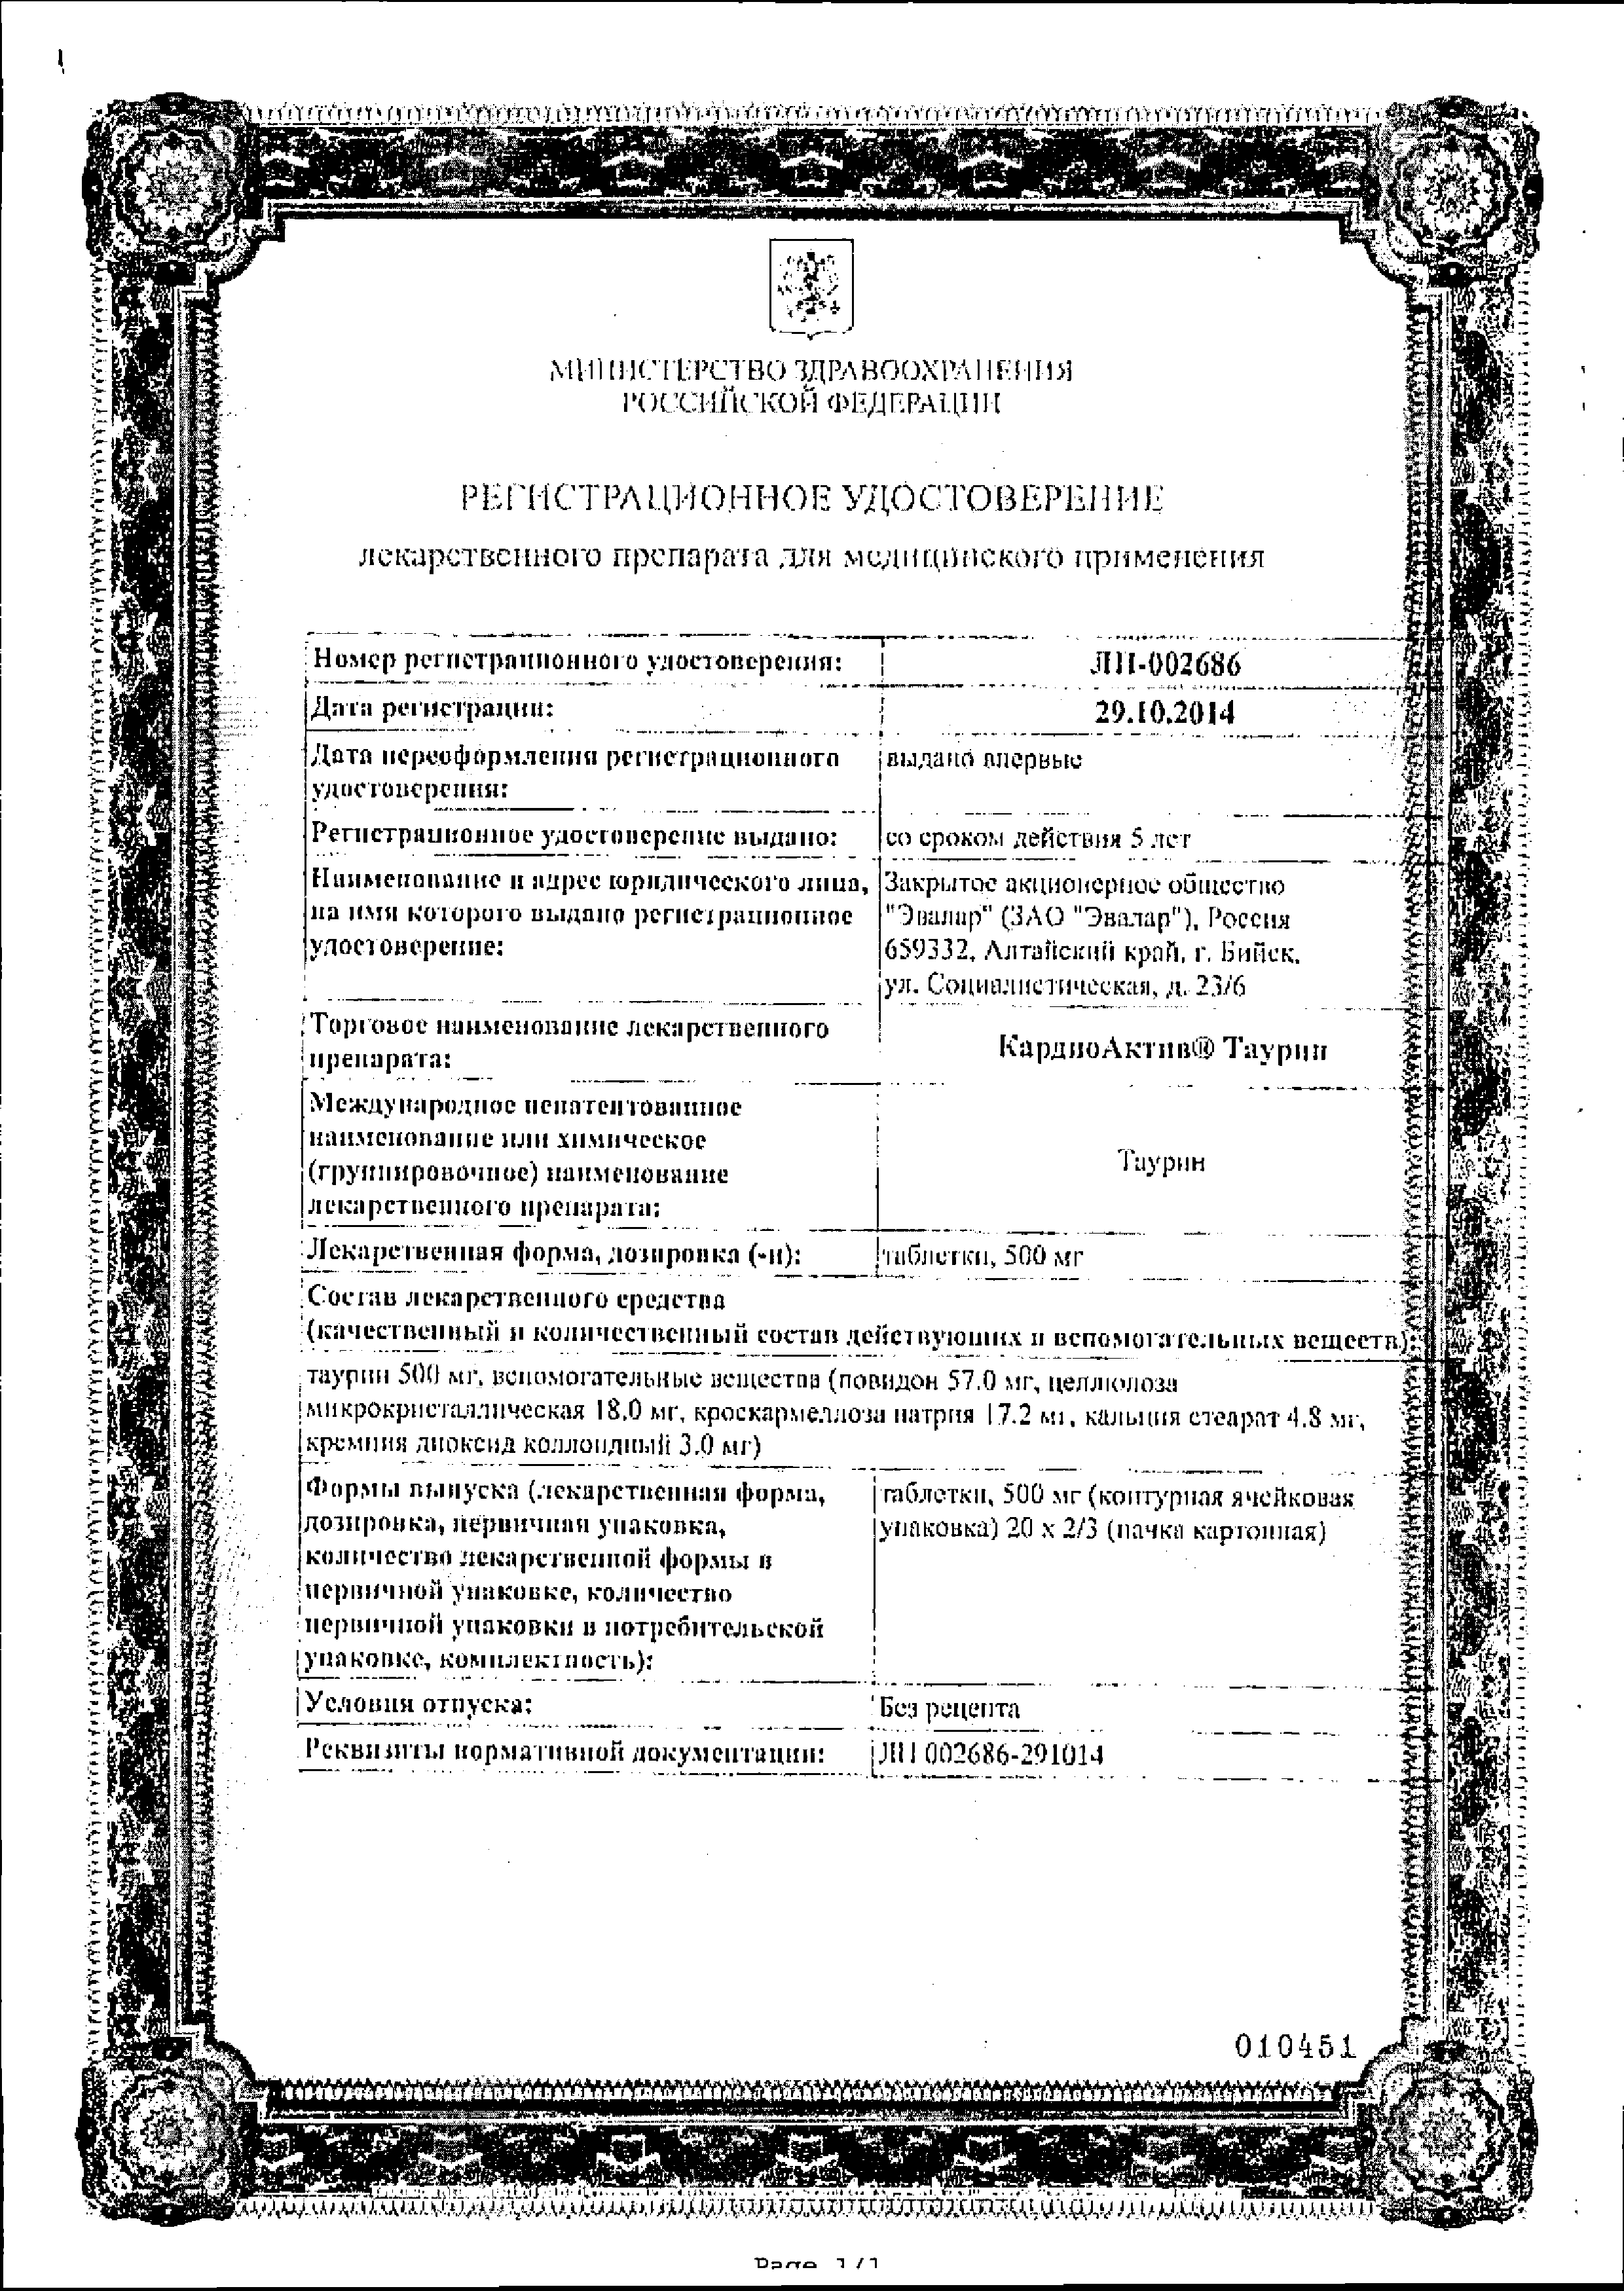 КардиоАктив Таурин сертификат